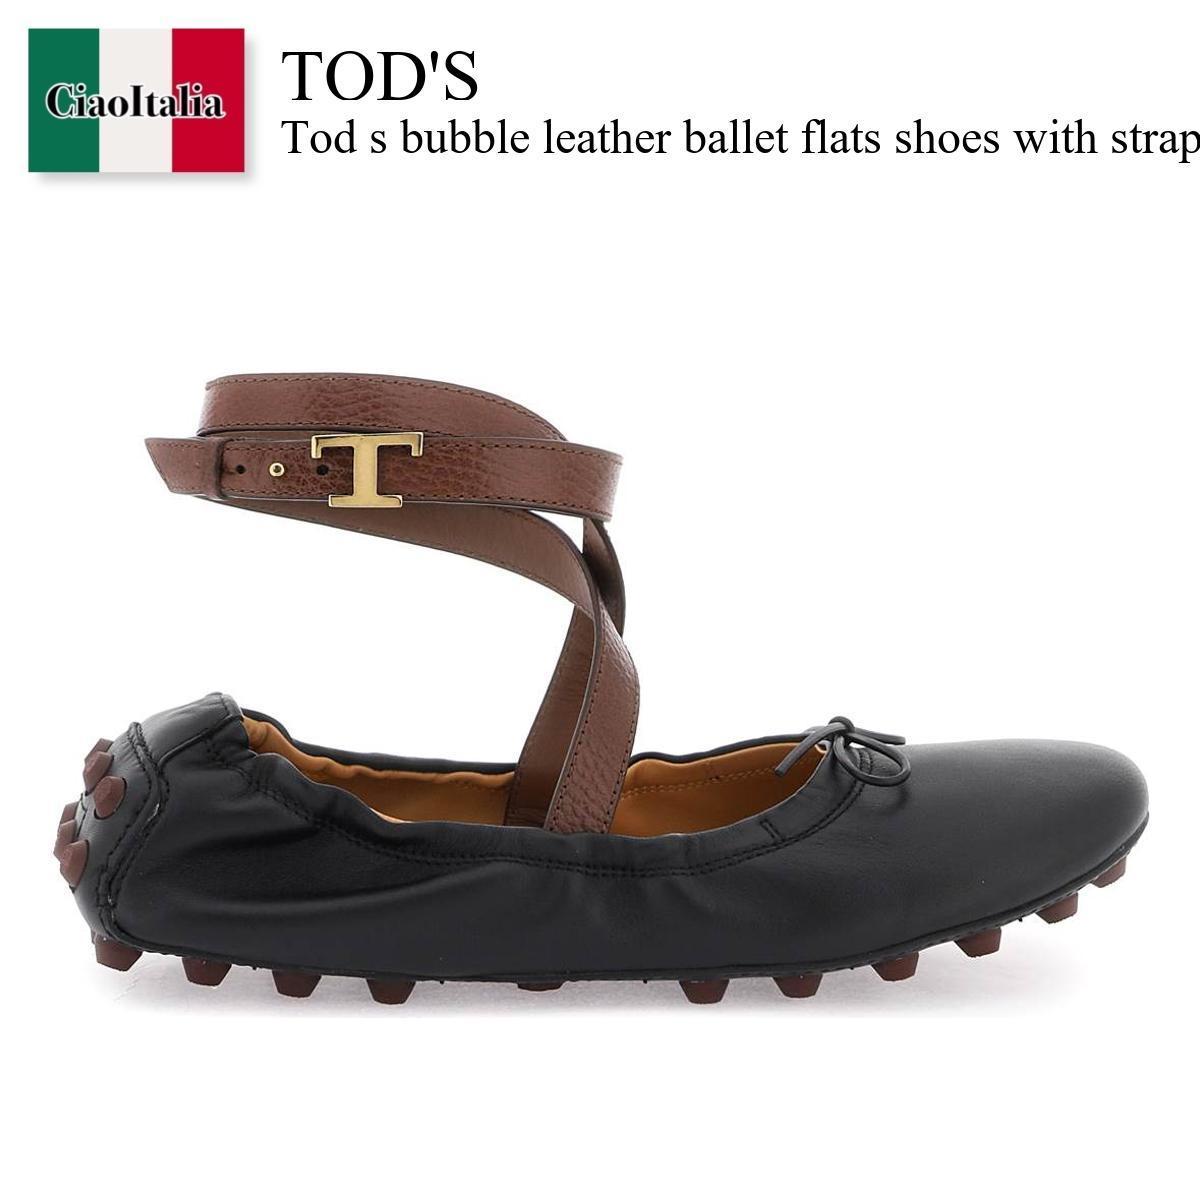 トッズ バレエシューズ トッズ / Tod S Bubble Leather Ballet Flats Shoes With Strap / XXW76K0HS50SWH / XXW76K0HS50SWH 014H / XXW76K0HS50SWH014H / バレエシューズ / 「正規品補償」「VIP価格販売」「お買い物サポート」